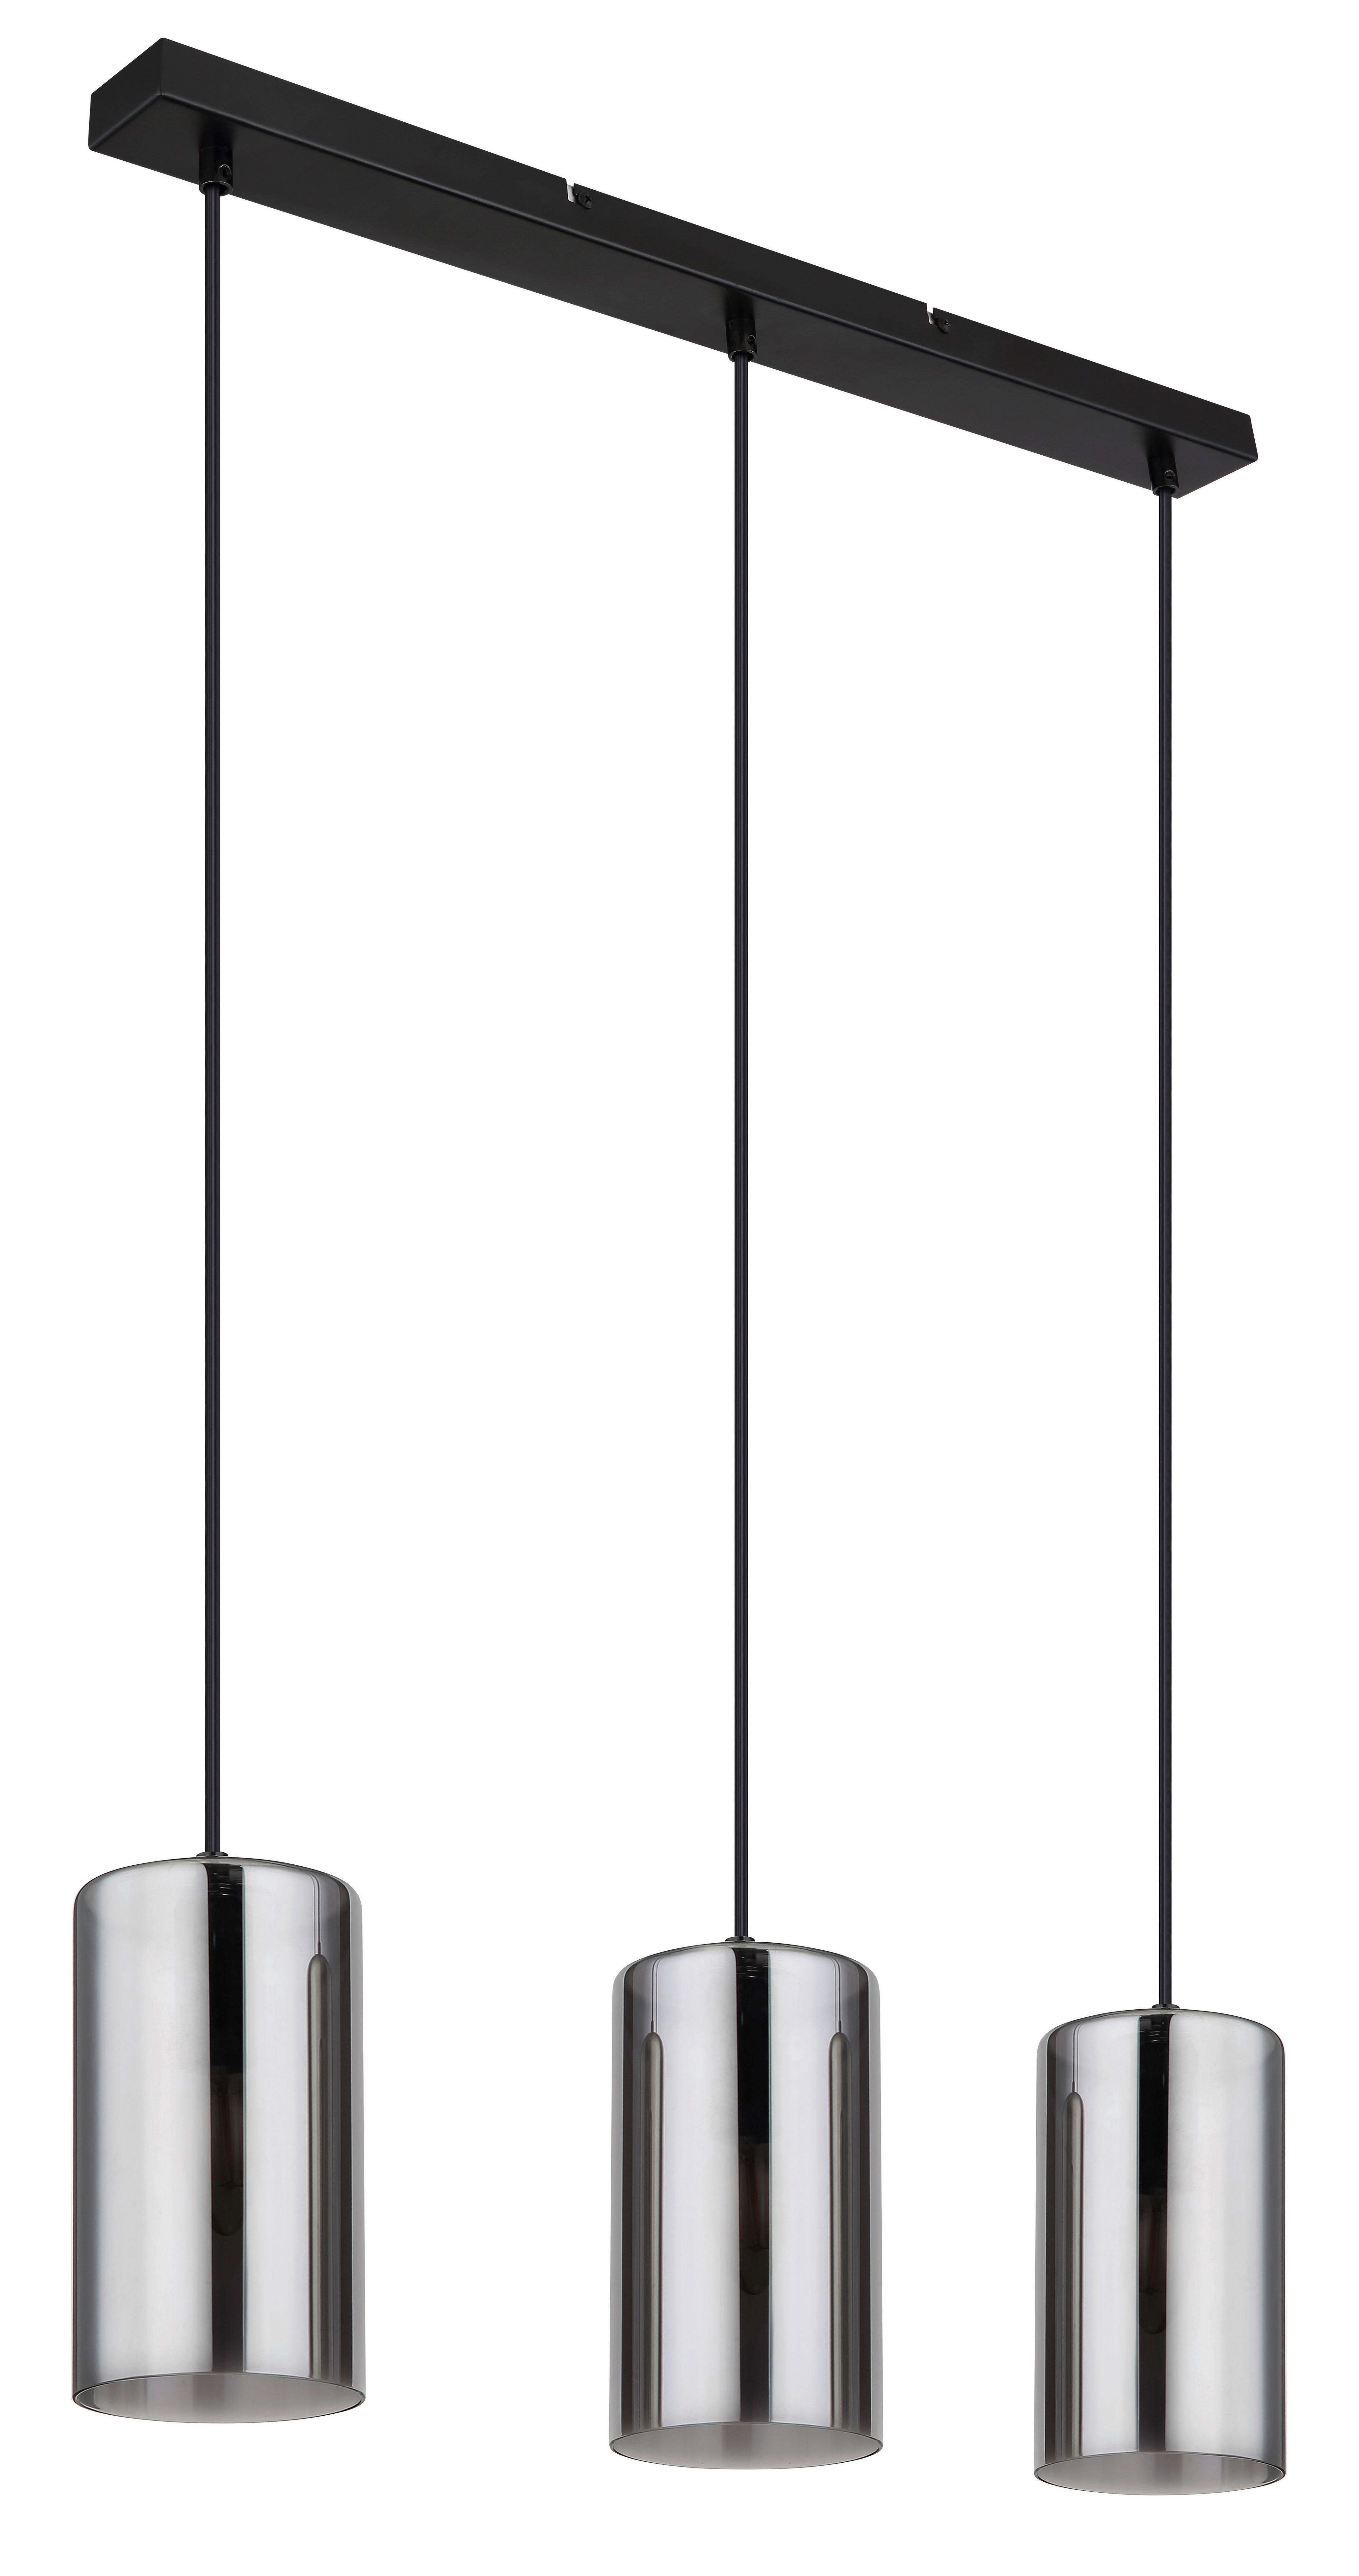 HÄNGELEUCHTE 63/11/120 cm   - Schwarz, Basics, Glas/Metall (63/11/120cm) - Globo